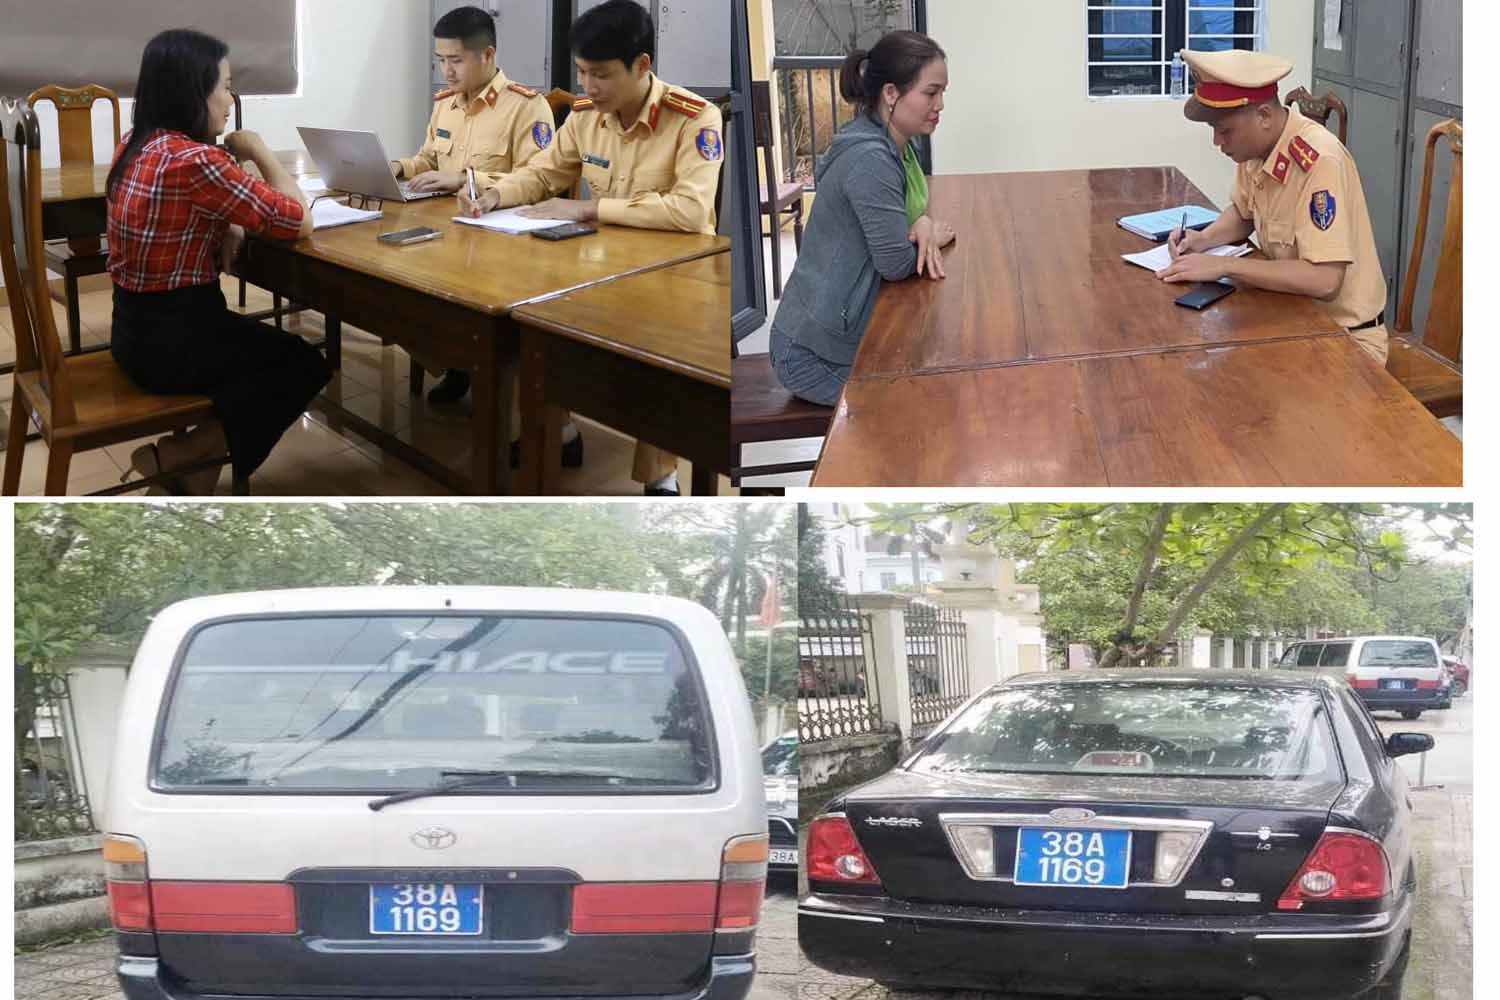 Công an Thành phố Hà Tĩnh làm việc với những người liên quan vụ 2 xe ôtô gắn biển xanh giống nhau. Ảnh: Công an Hà Tĩnh.